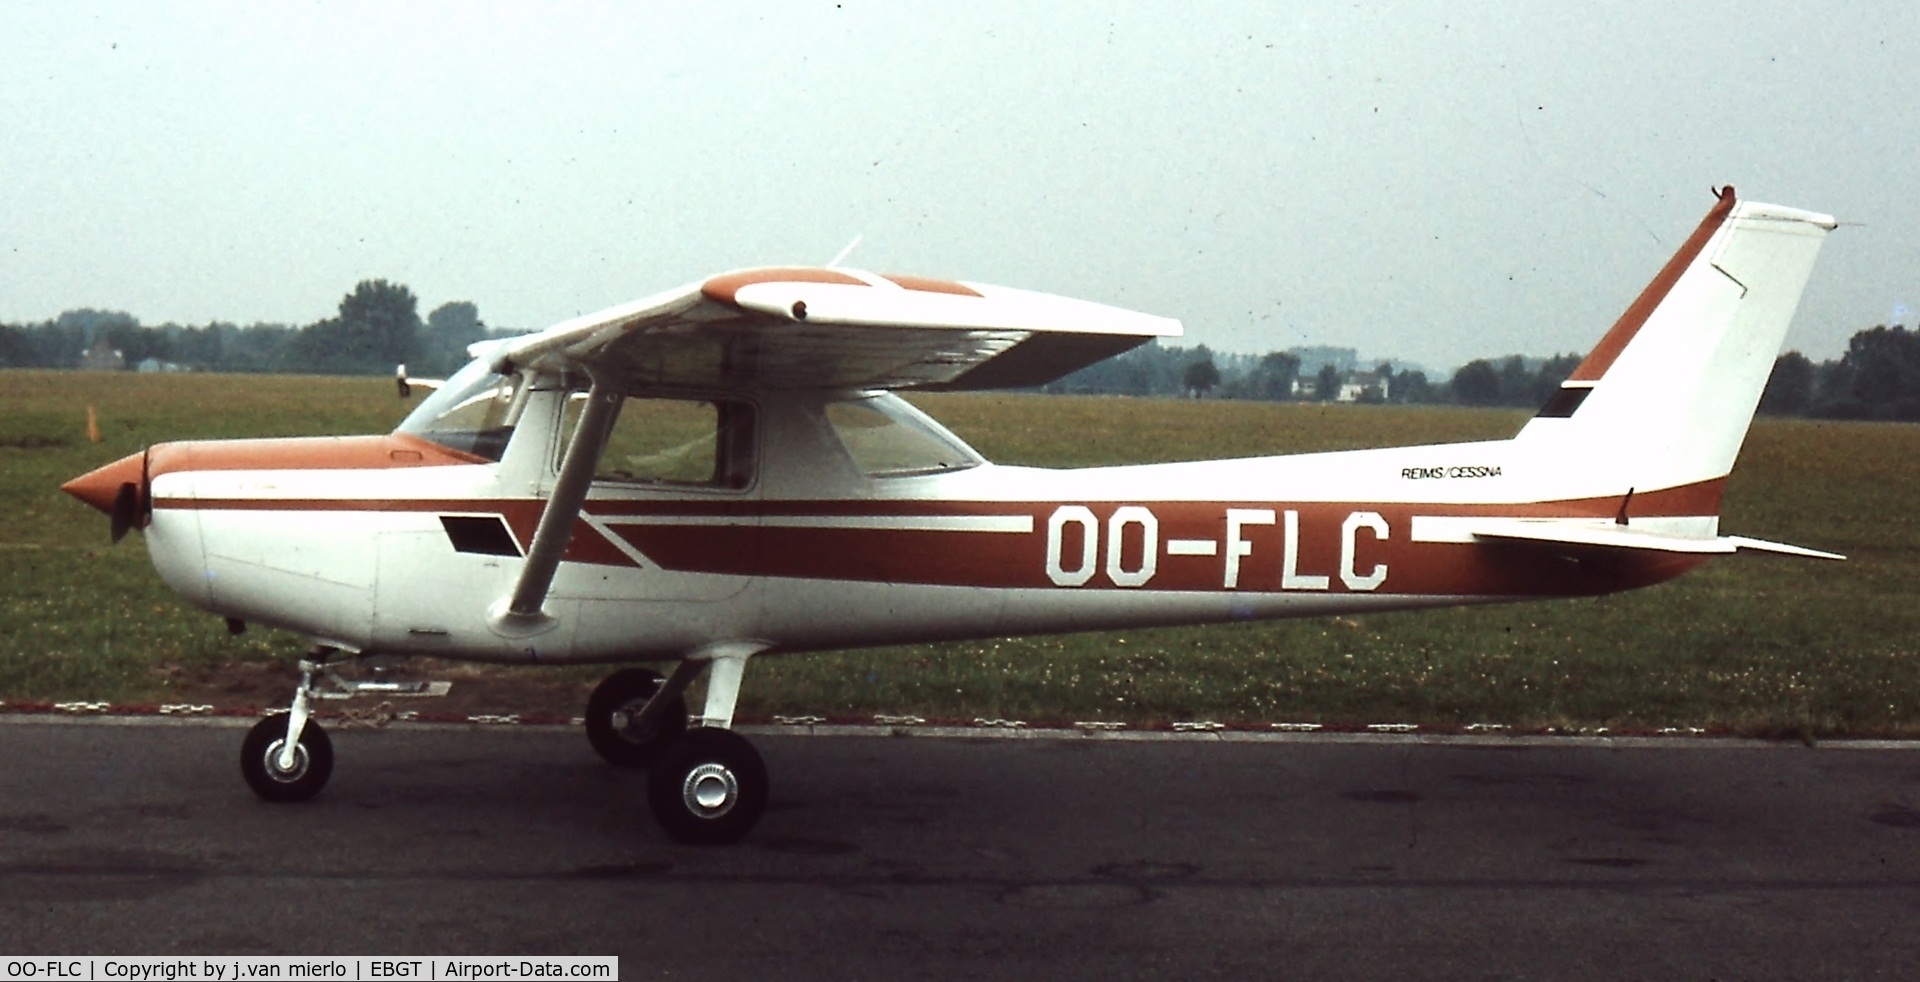 OO-FLC, 1979 Reims F152 C/N 1624, Gent, Belgium end '70s